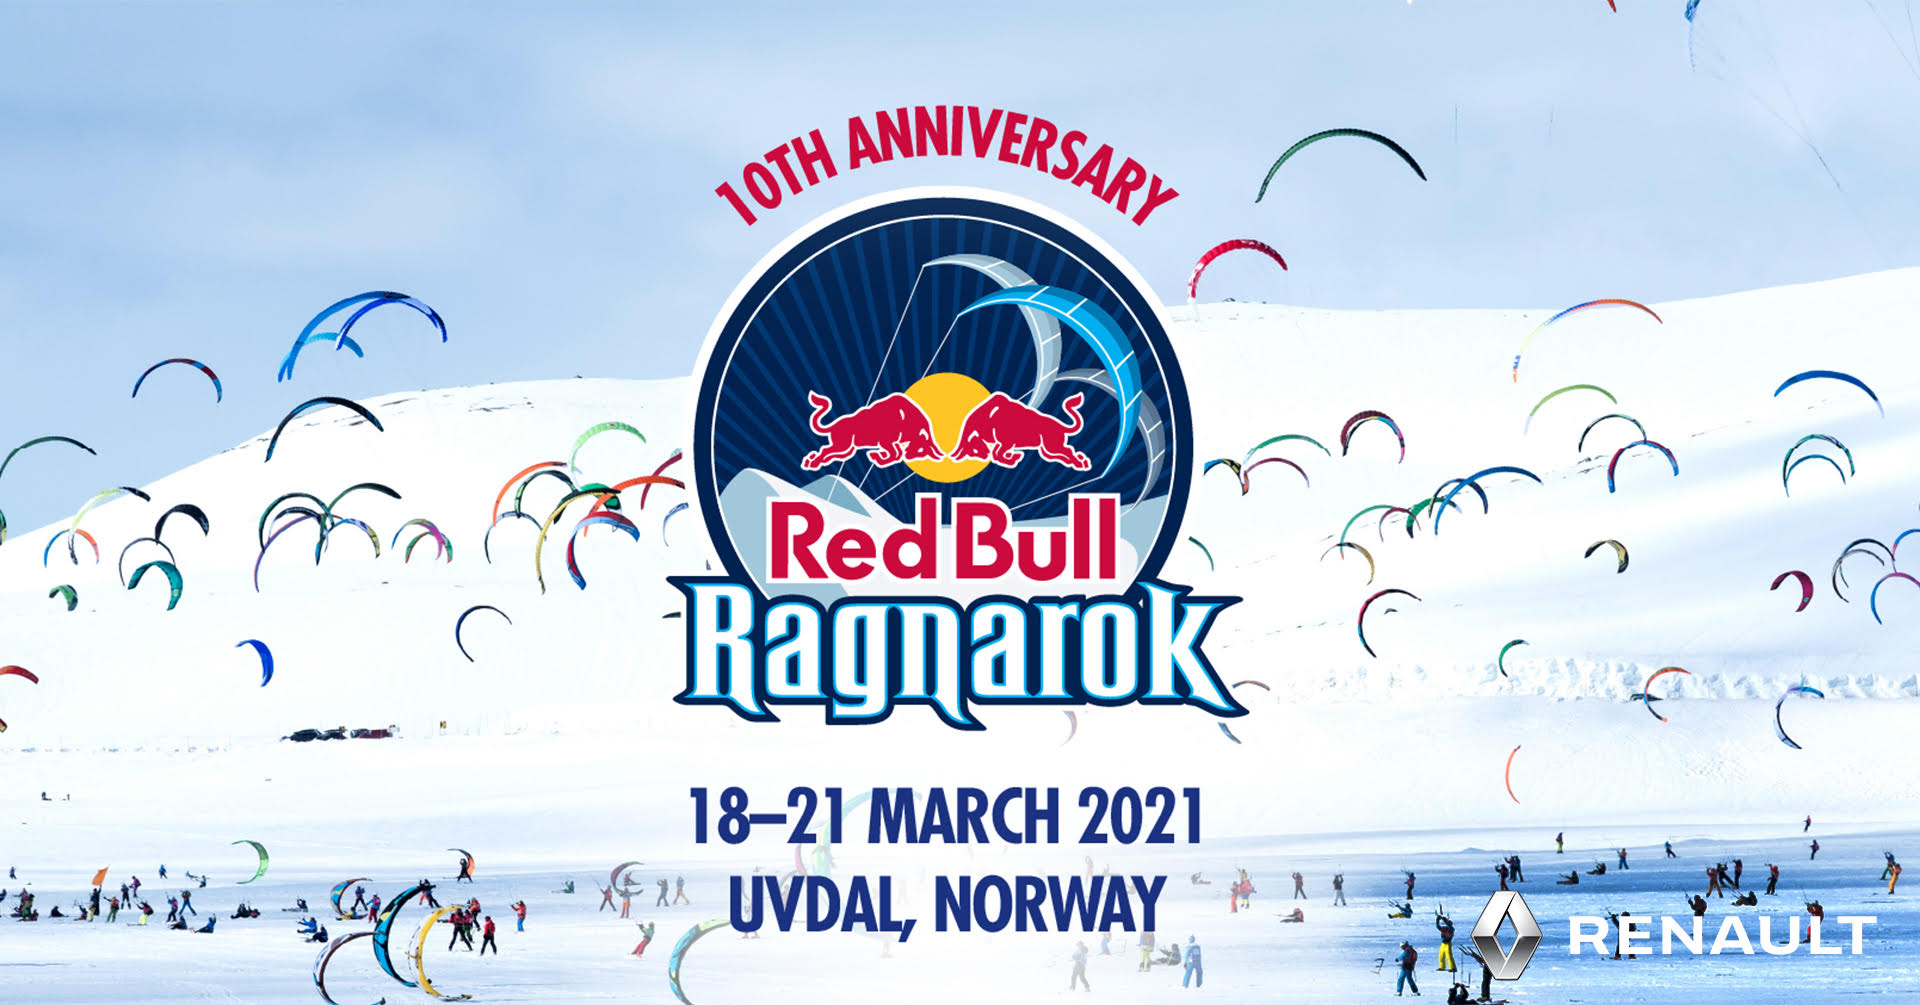 Ragnarok 2021 is announced! | Features | Free Kitesurfing Online | IKSURFMAG